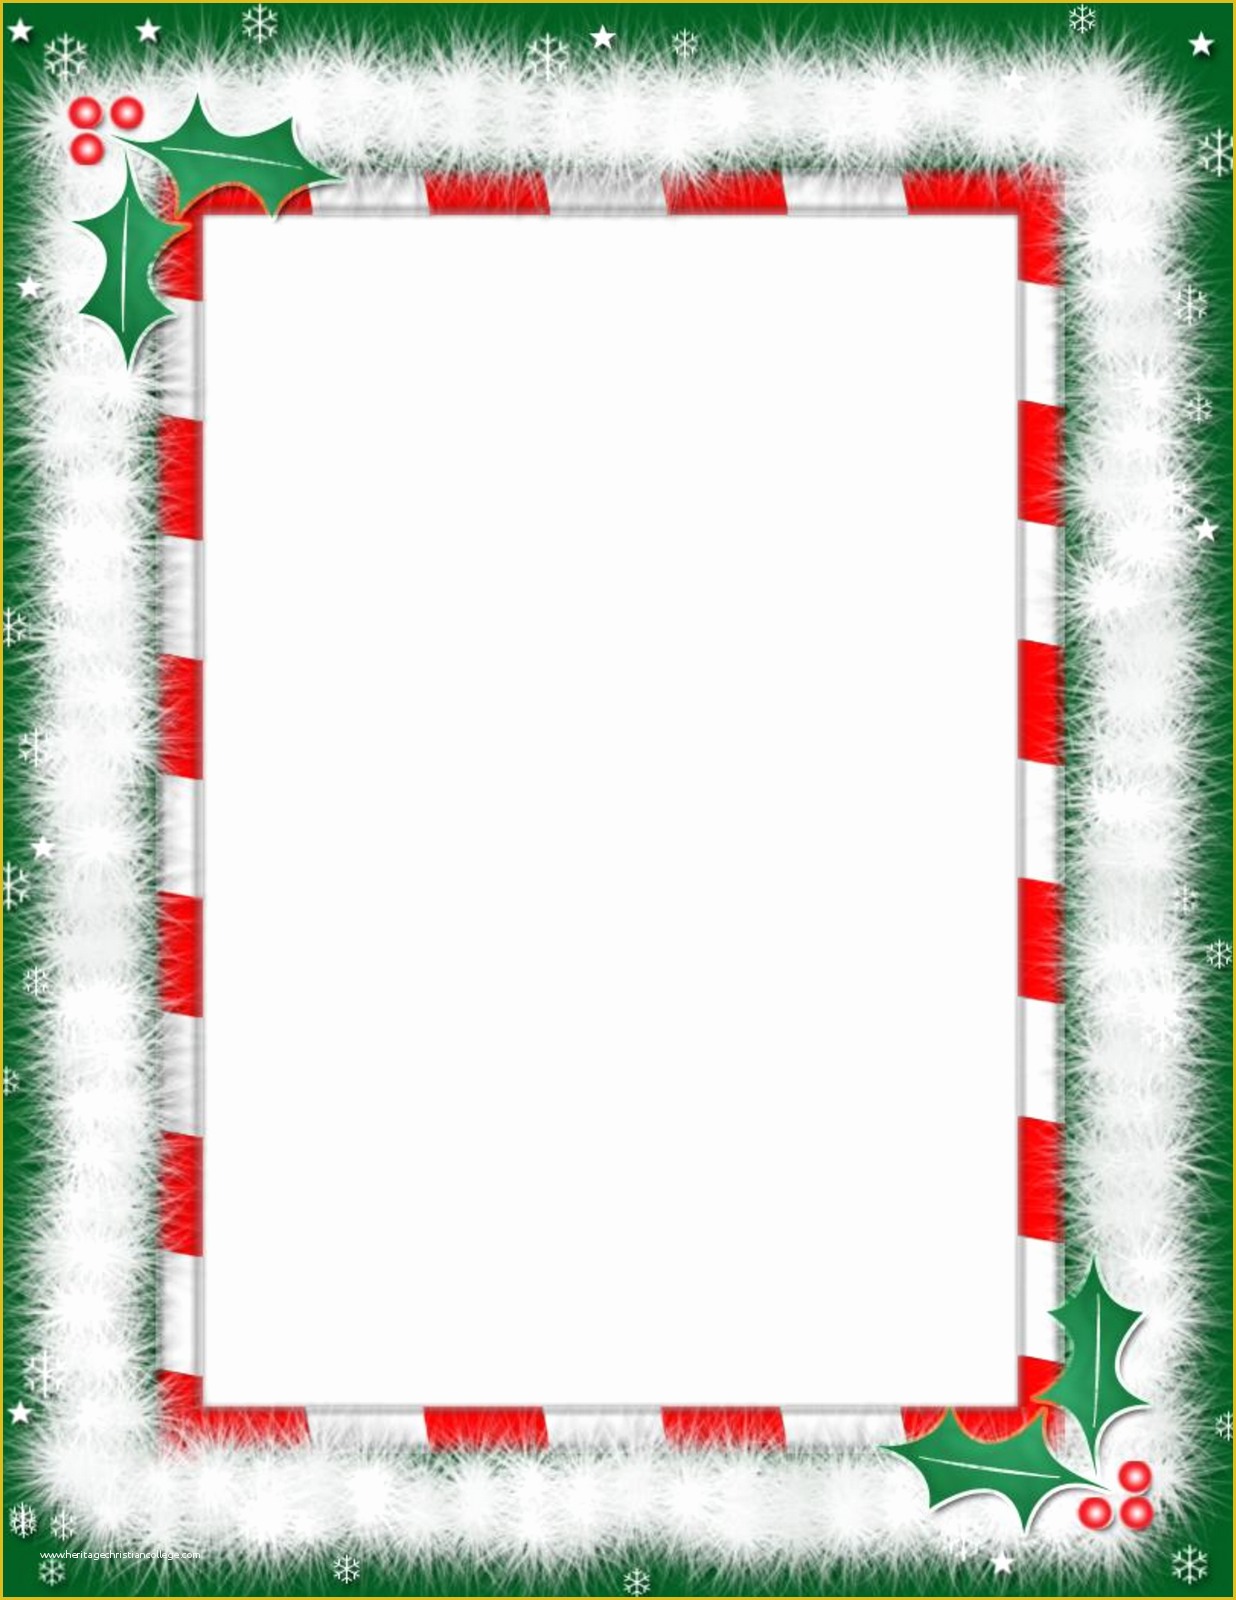 Free Christmas Border Templates Of Christmas Wallpapers and and S Christmas